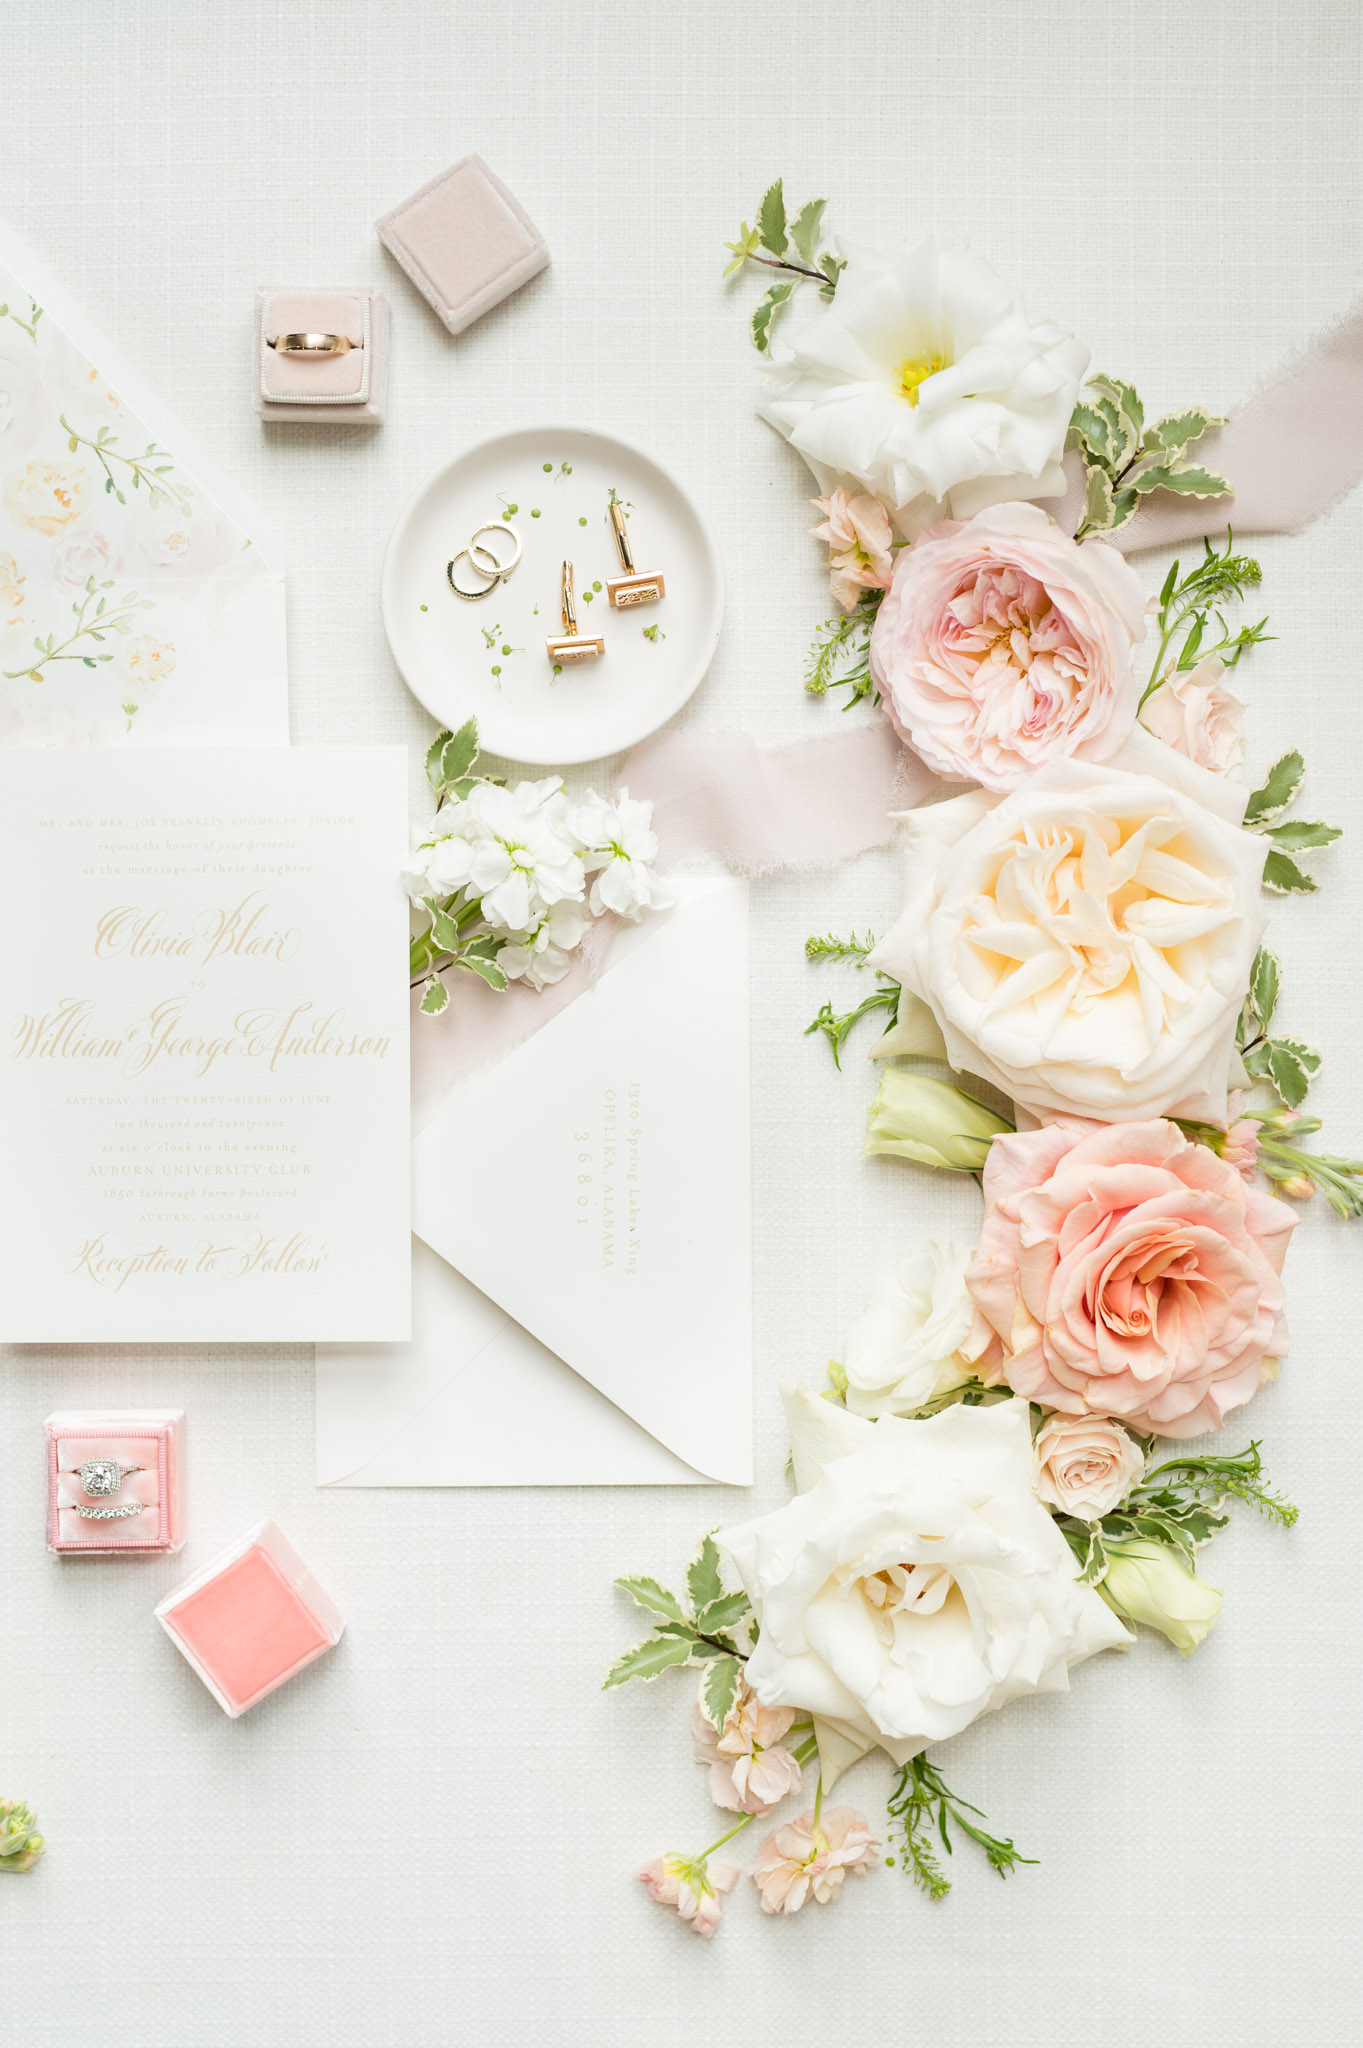 Floral arrangements and invitation suites.